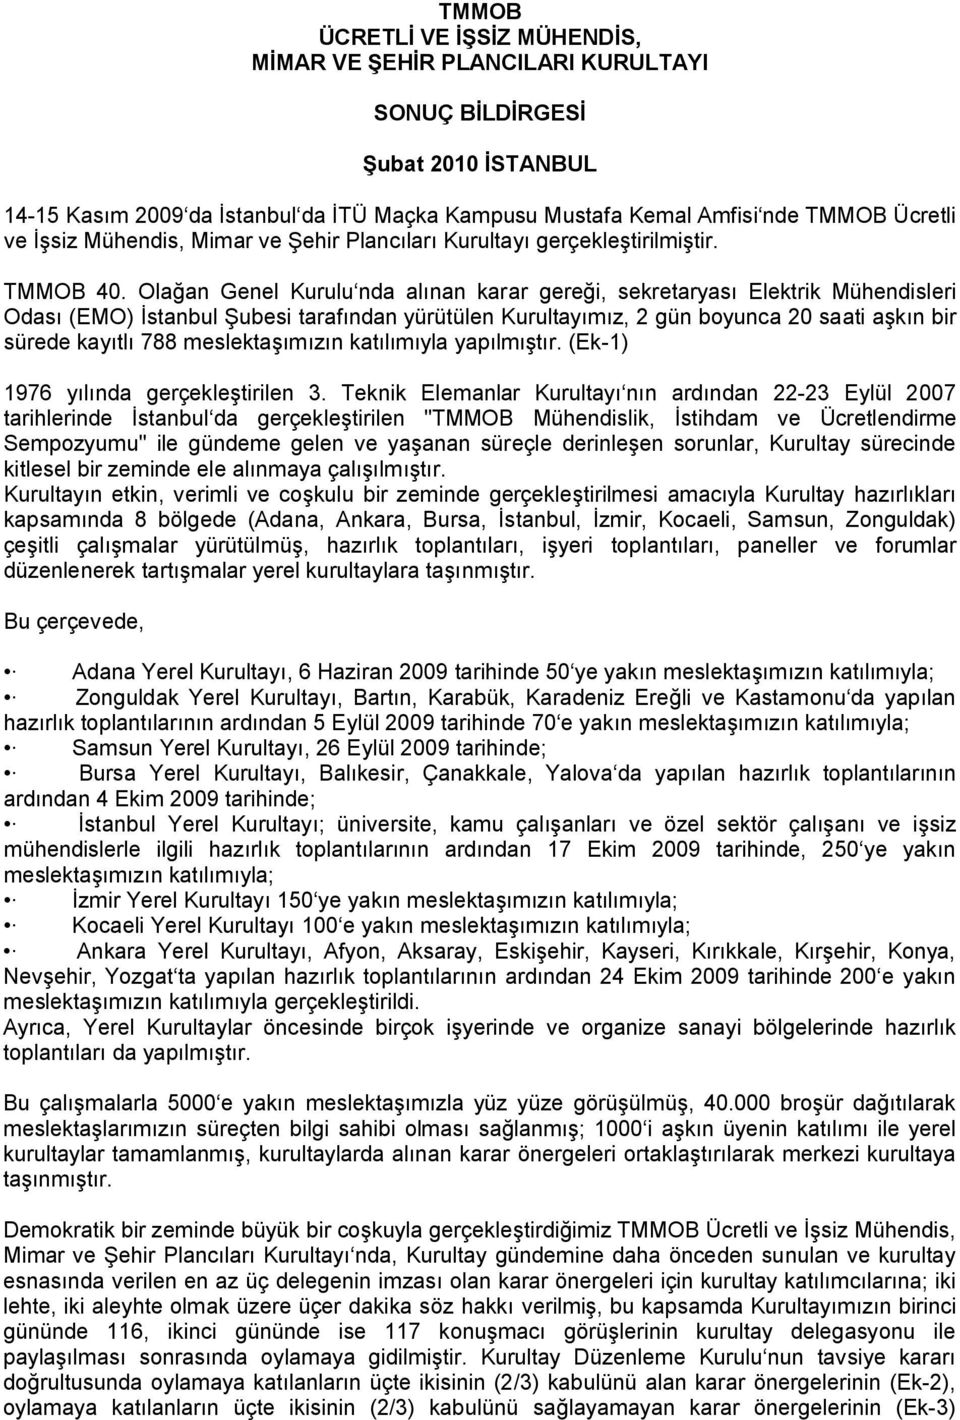 Olağan Genel Kurulu nda alınan karar gereği, sekretaryası Elektrik Mühendisleri Odası (EMO) İstanbul Şubesi tarafından yürütülen Kurultayımız, 2 gün boyunca 20 saati aşkın bir sürede kayıtlı 788